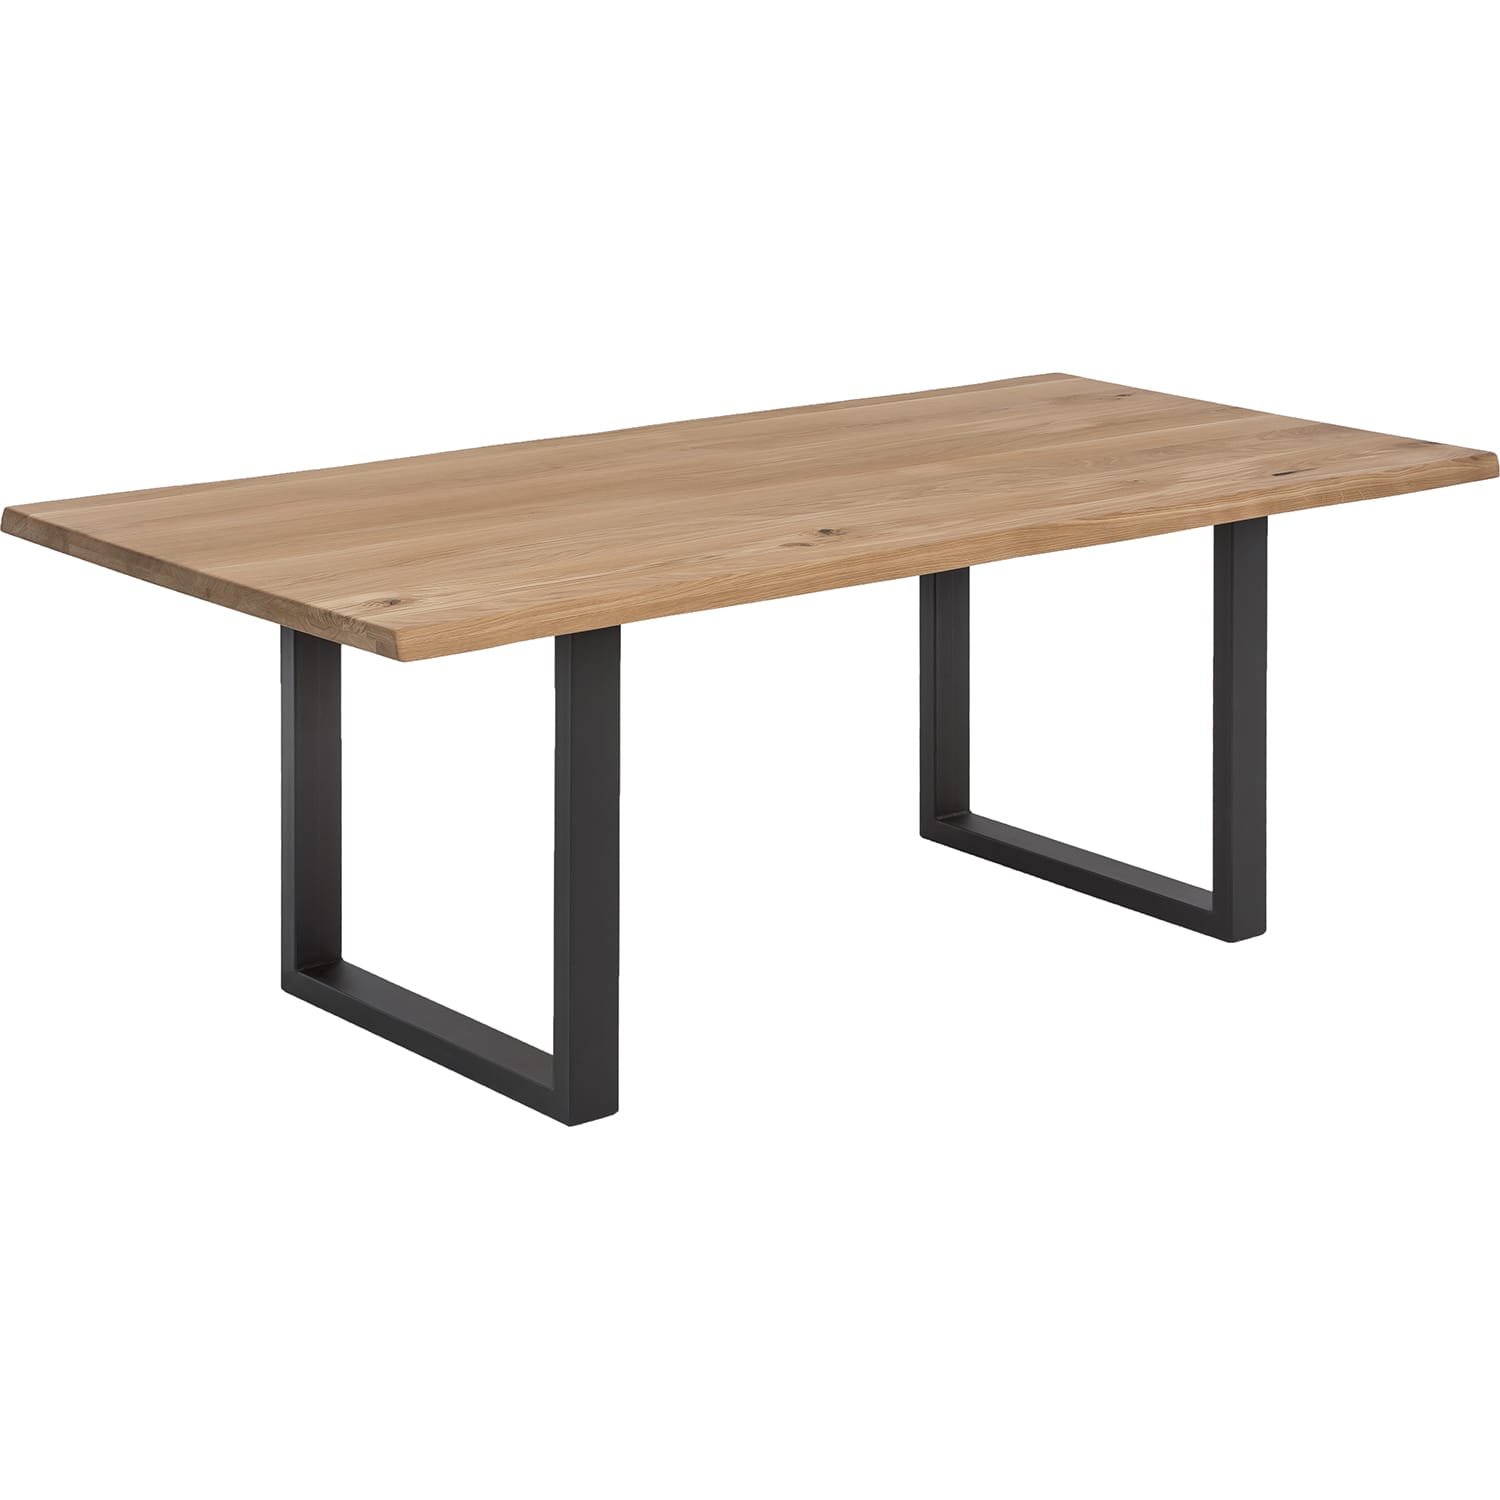 Tisch Wildeiche Metall natur antikschwarz 120x80 | Massivholztische |  Esstische | Tische | Möbel | mutoni möbel